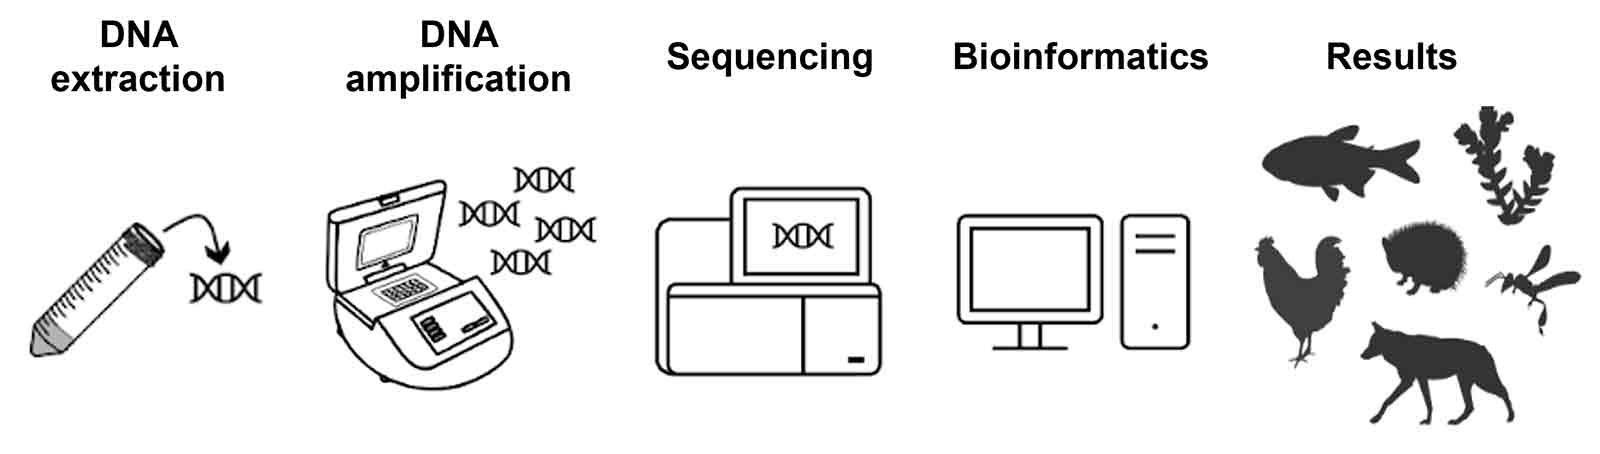 Bildliche Darstellungen für DNA extraction, DNA amplification, sequencing, bioinformatics und results